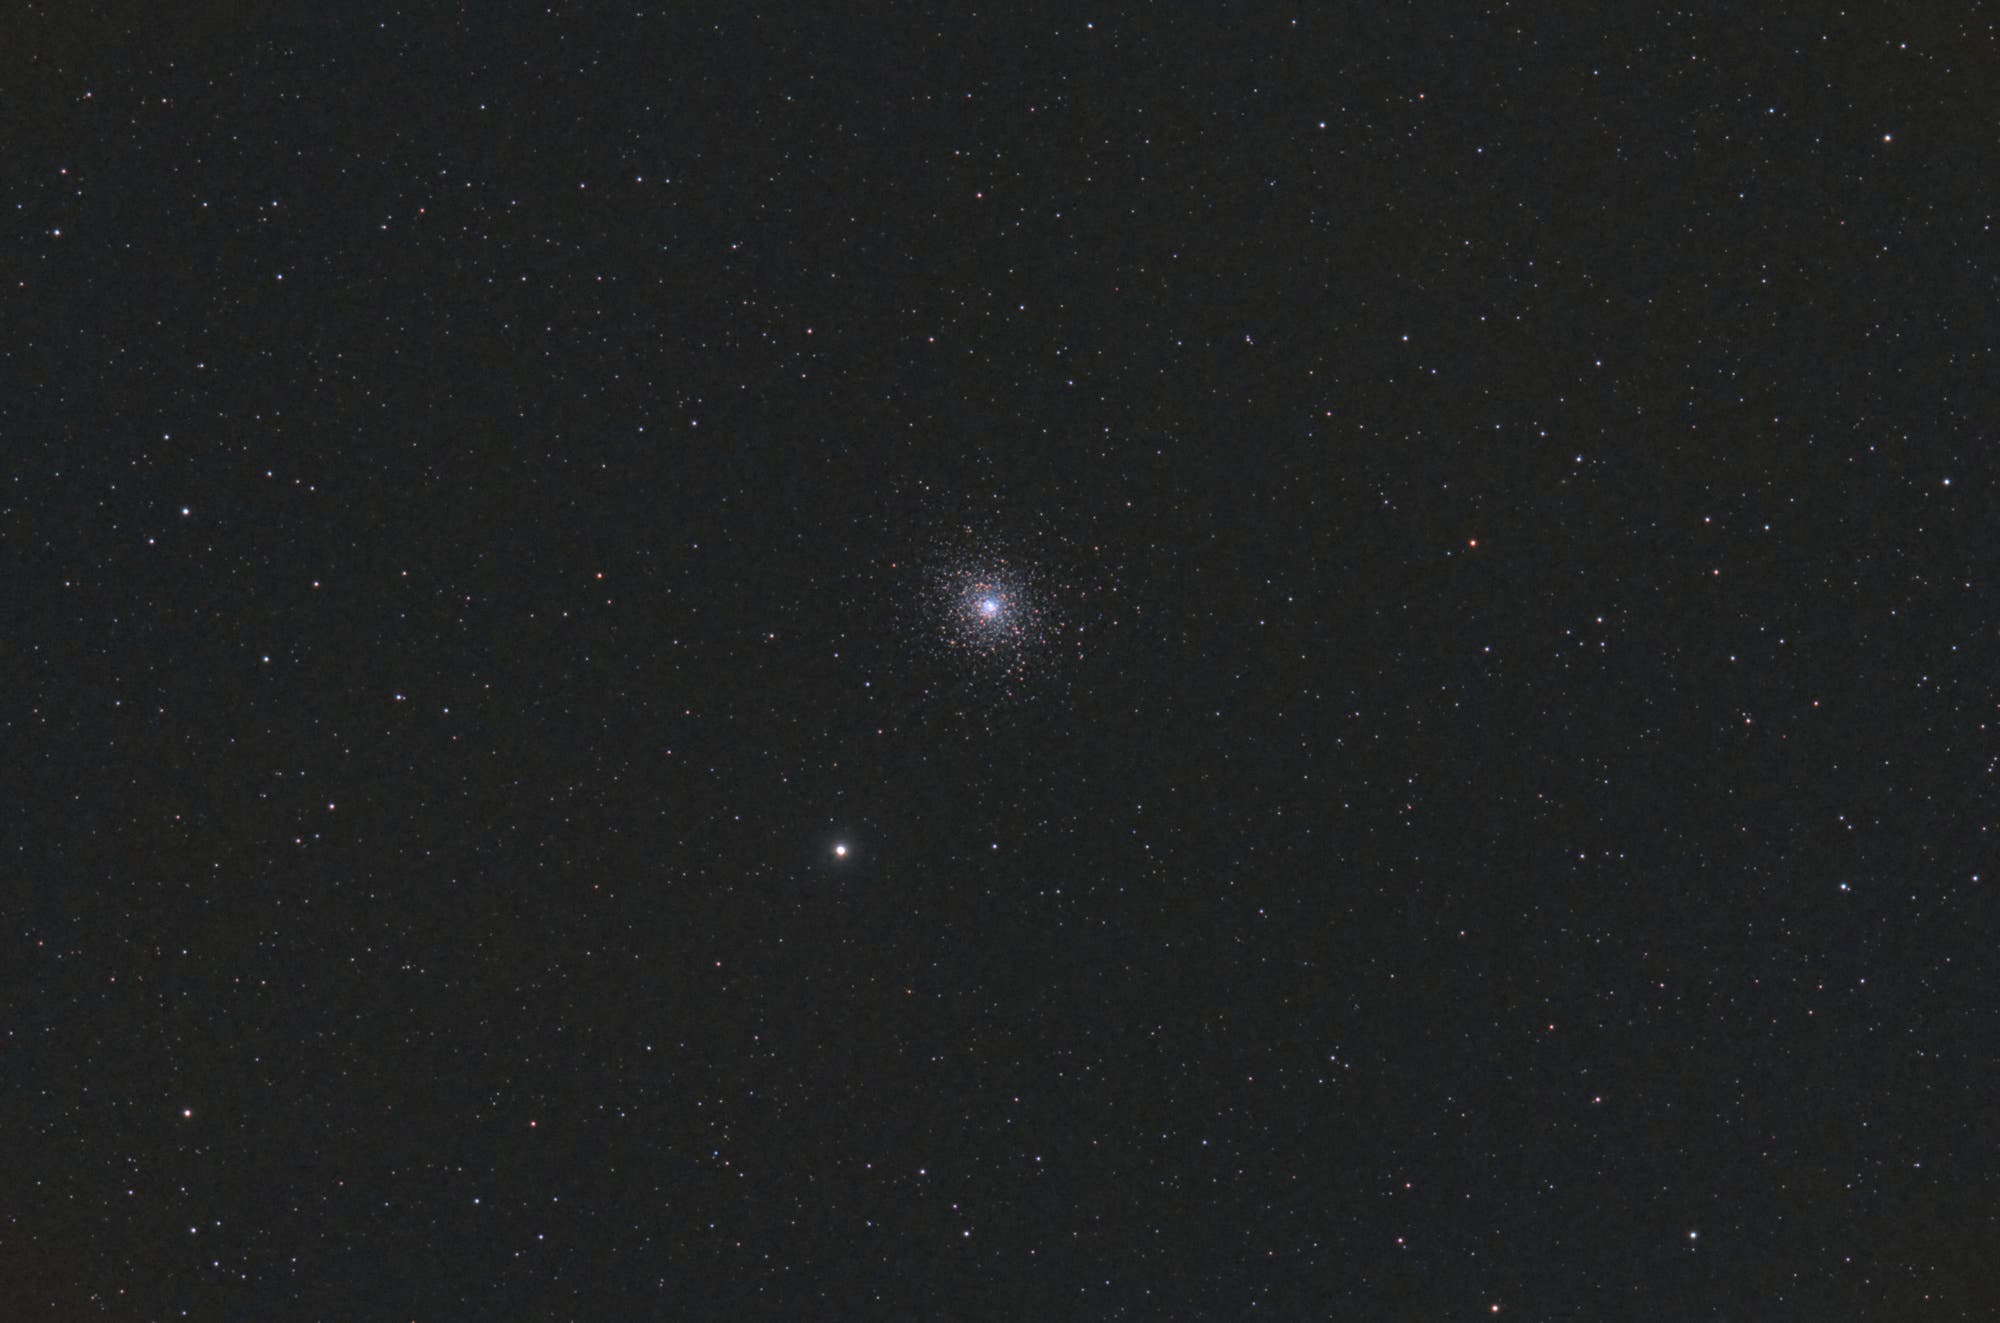 Messier 5